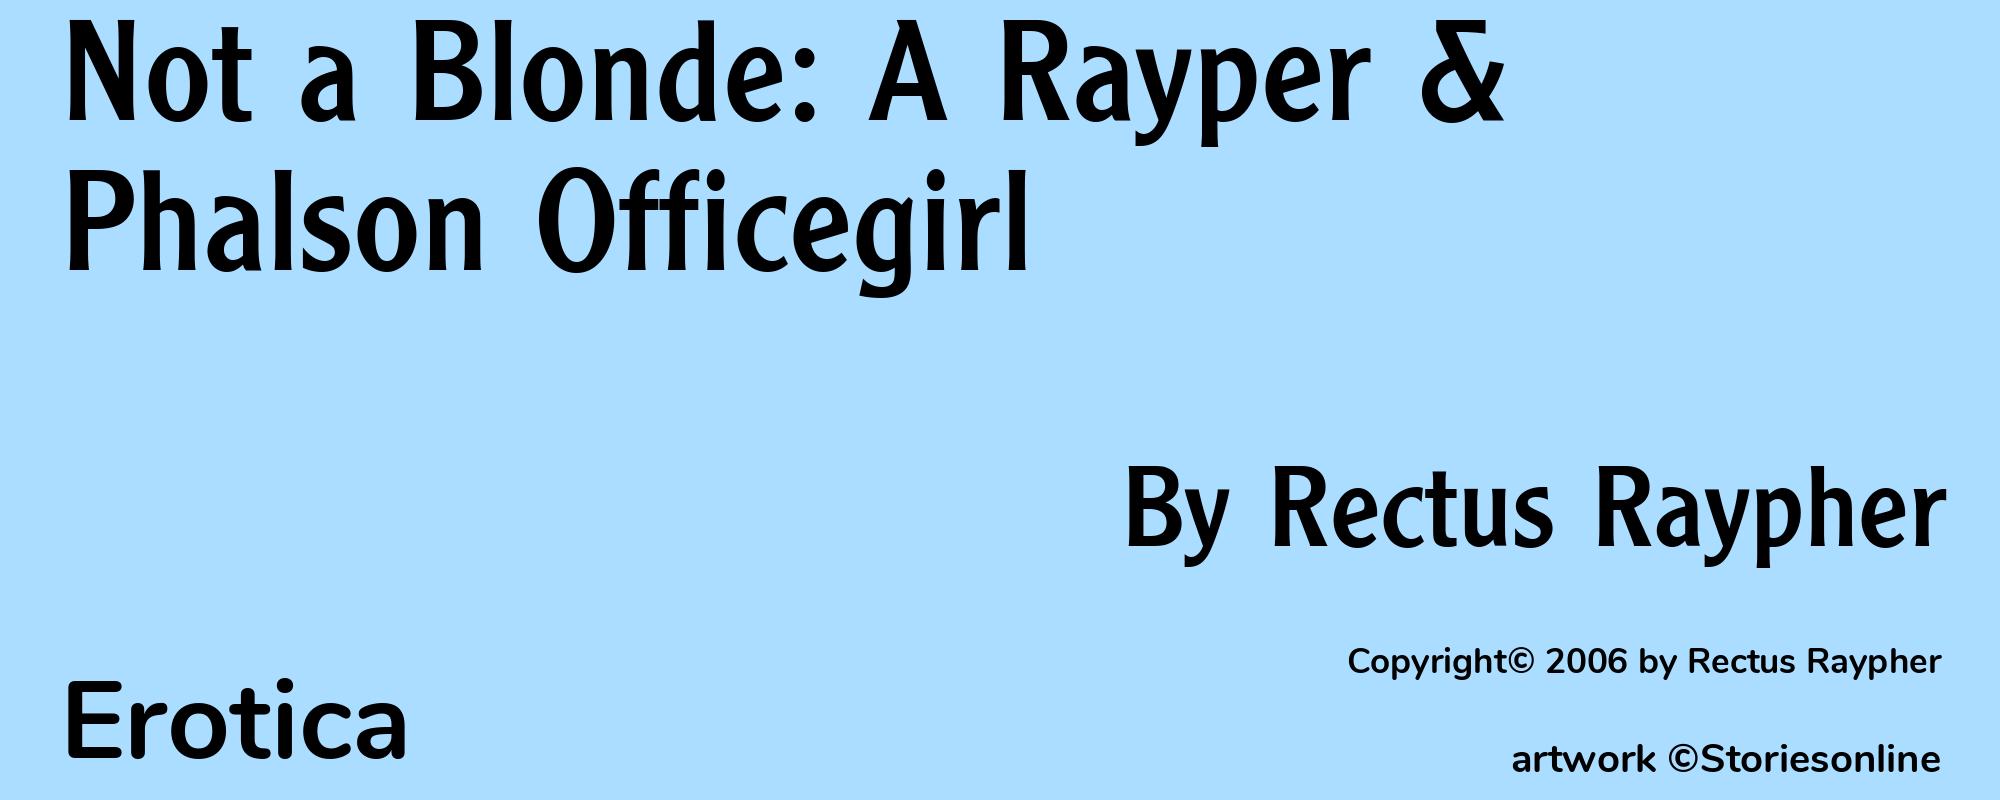 Not a Blonde: A Rayper & Phalson Officegirl - Cover